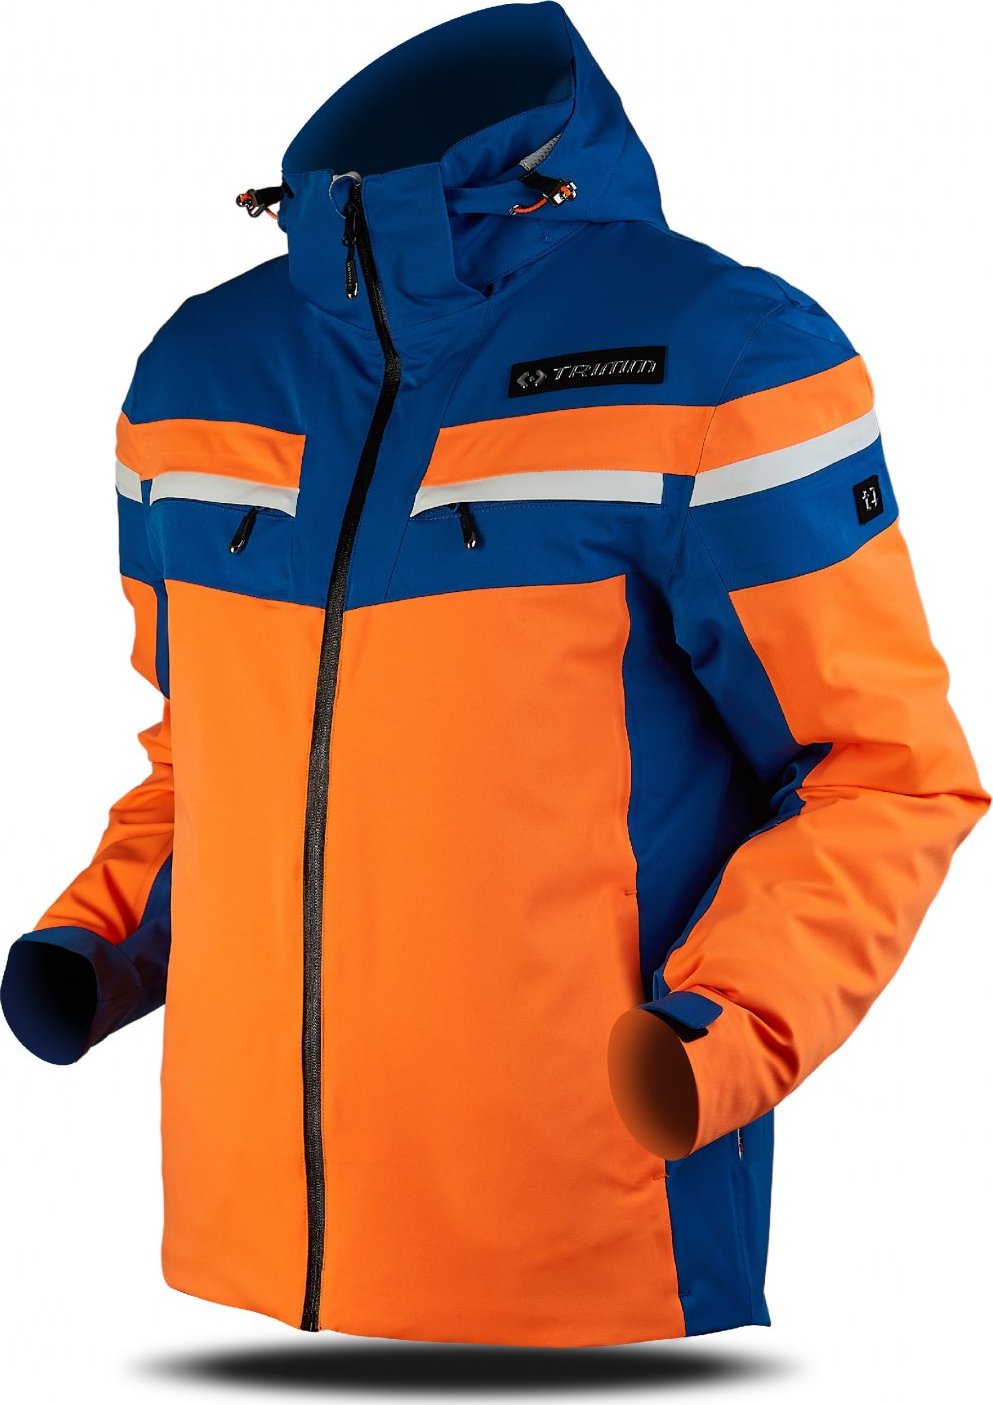 Pánská lyžařská bunda TRIMM Fusion oranžová Velikost: L, Barva: signal orange/jeans blue/white